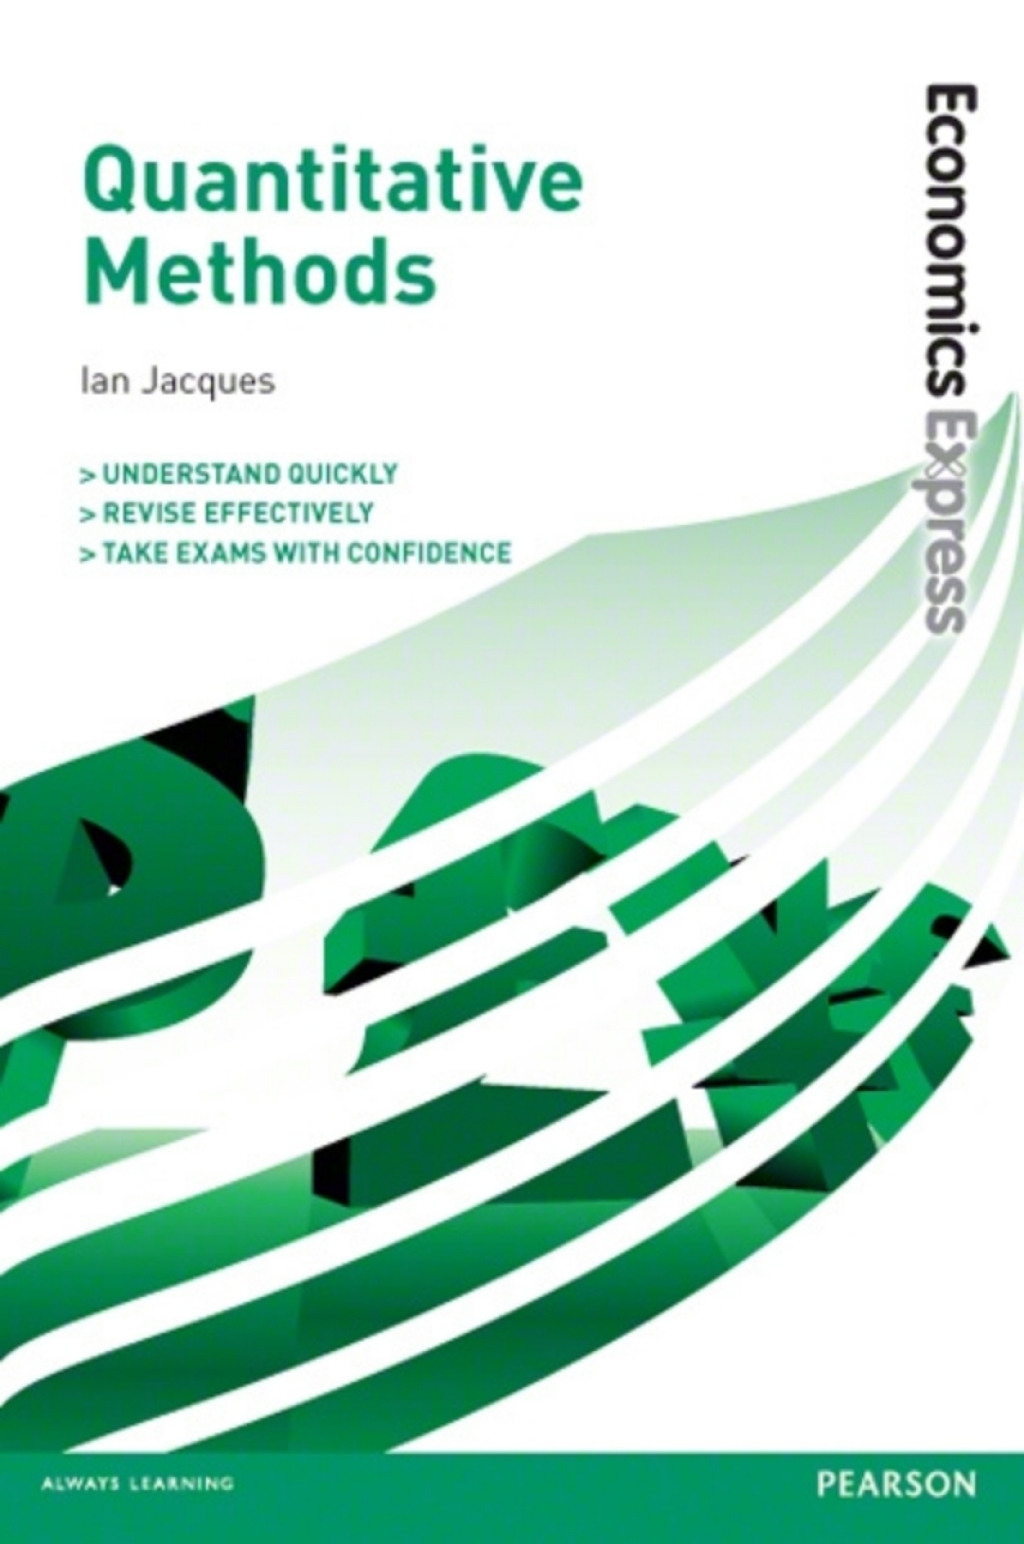 Economics Express: Quantitative Methods Ebook